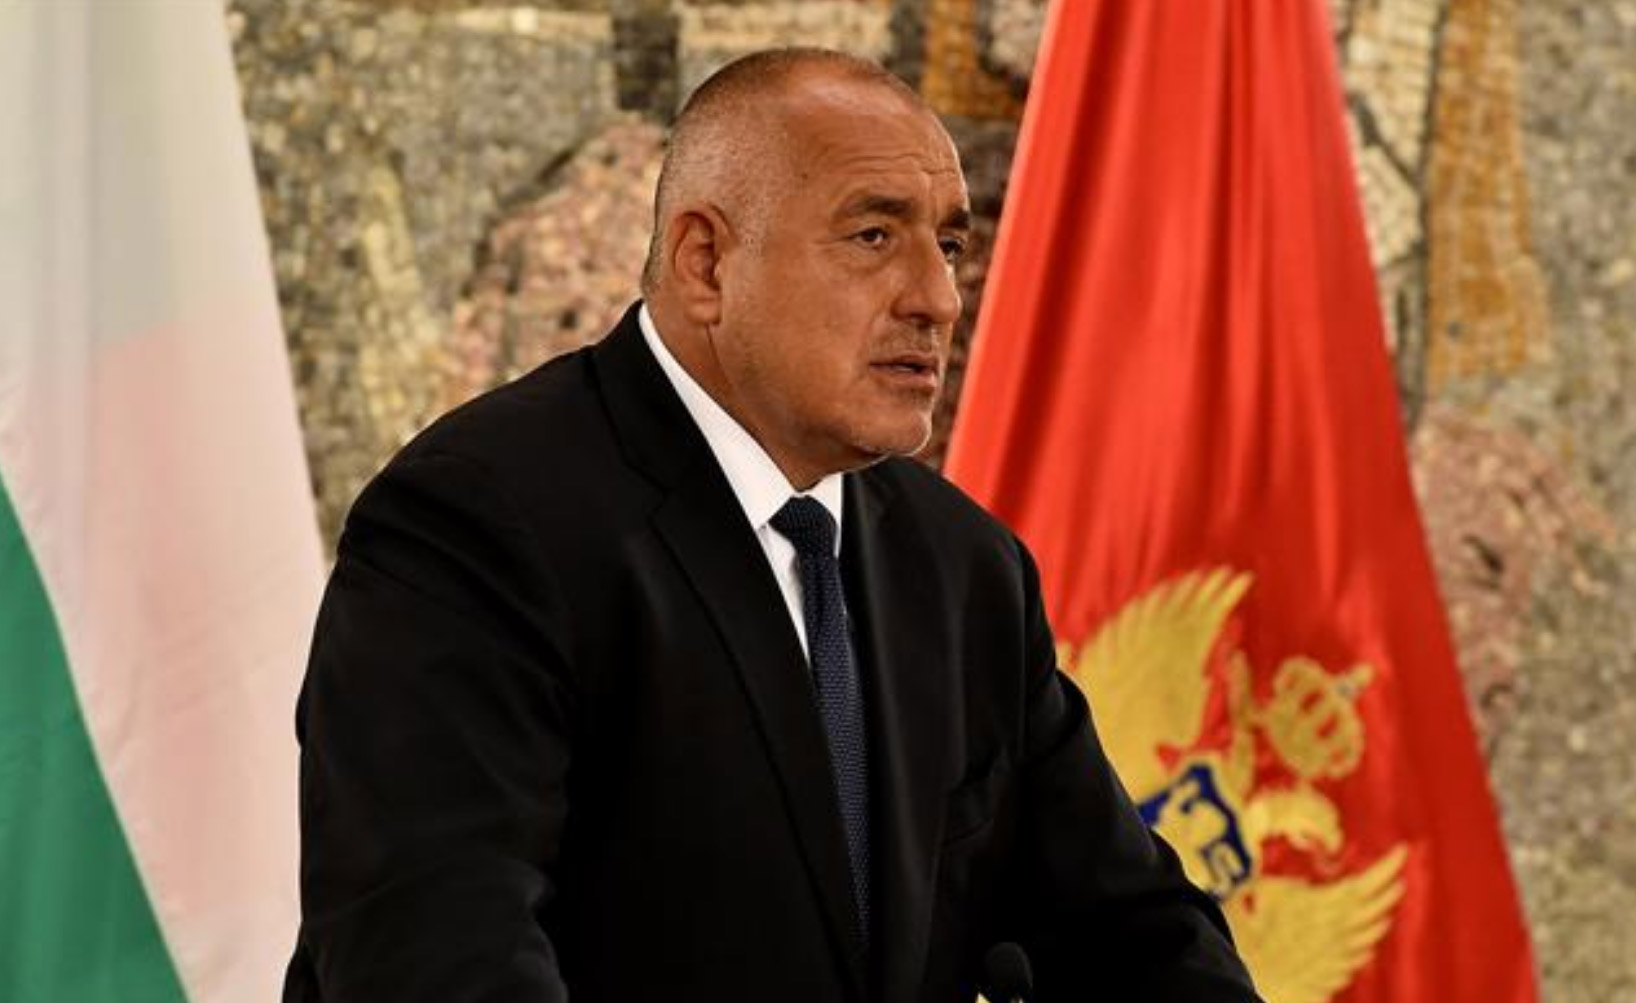 Bugarski premijer u Podgorici: Pustite imigrante, hajde da zajedno izvozimo struju u Italiju